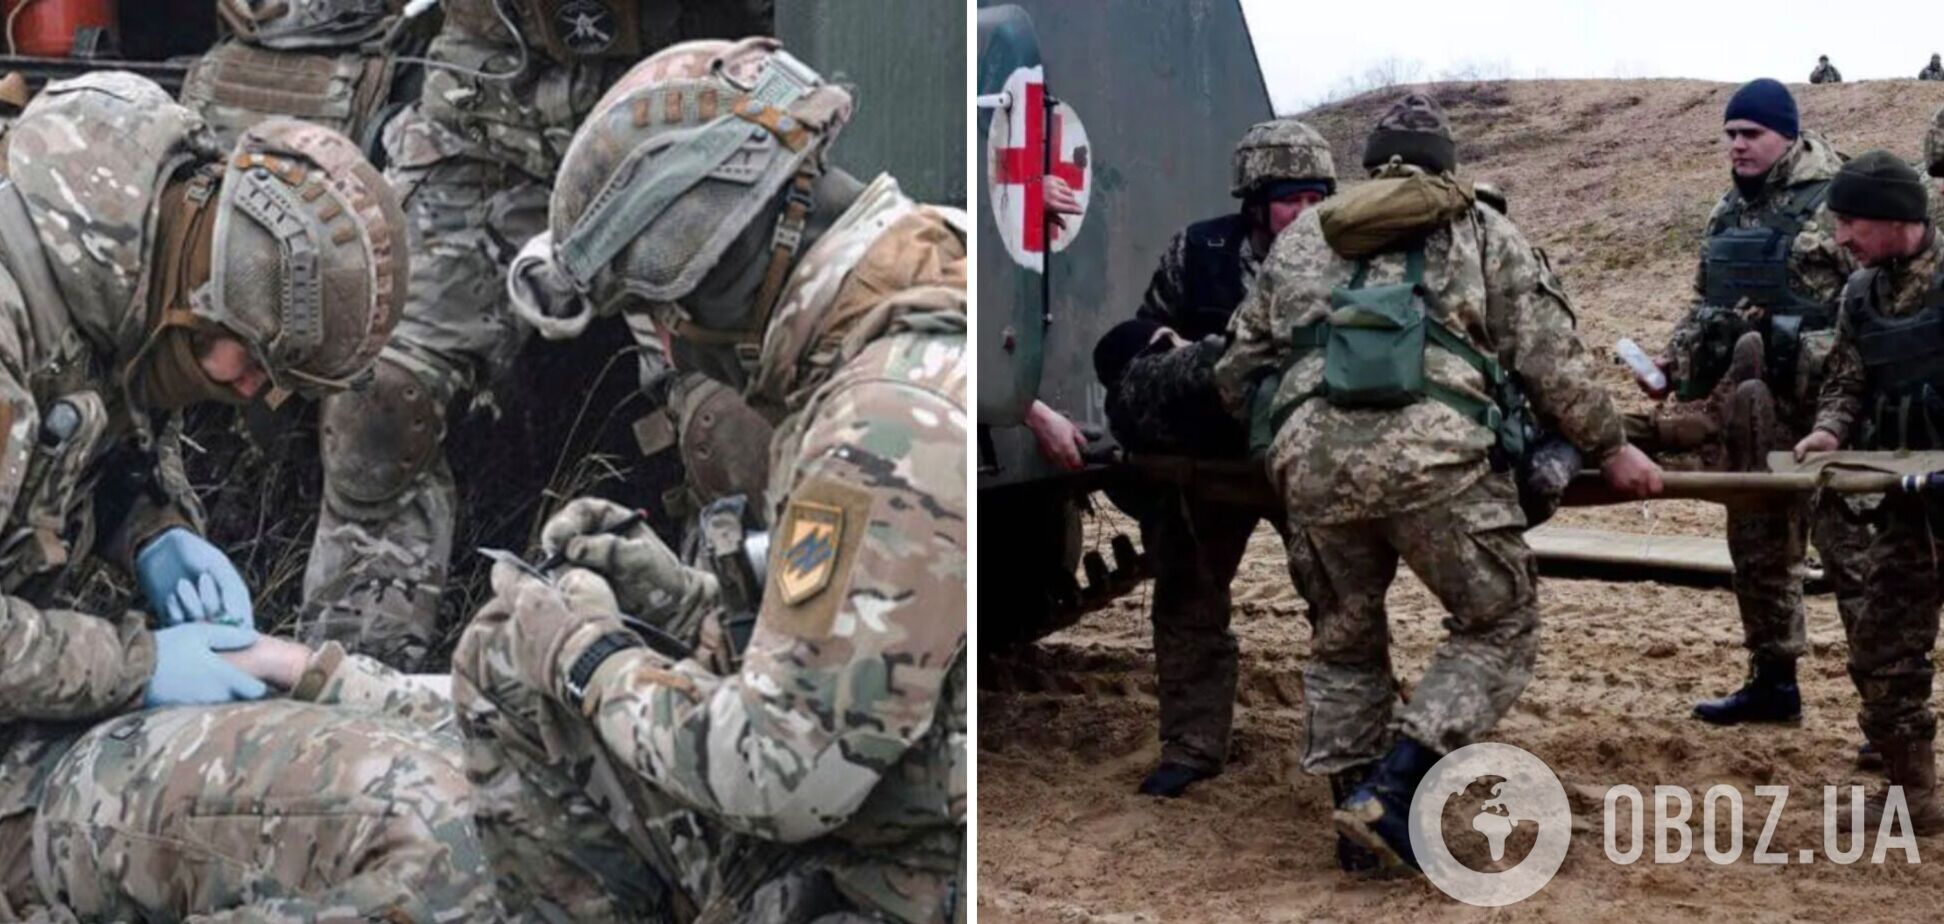 'Братик, держись': украинские воины показали кадры спасения раненого побратима на передовой. Видео